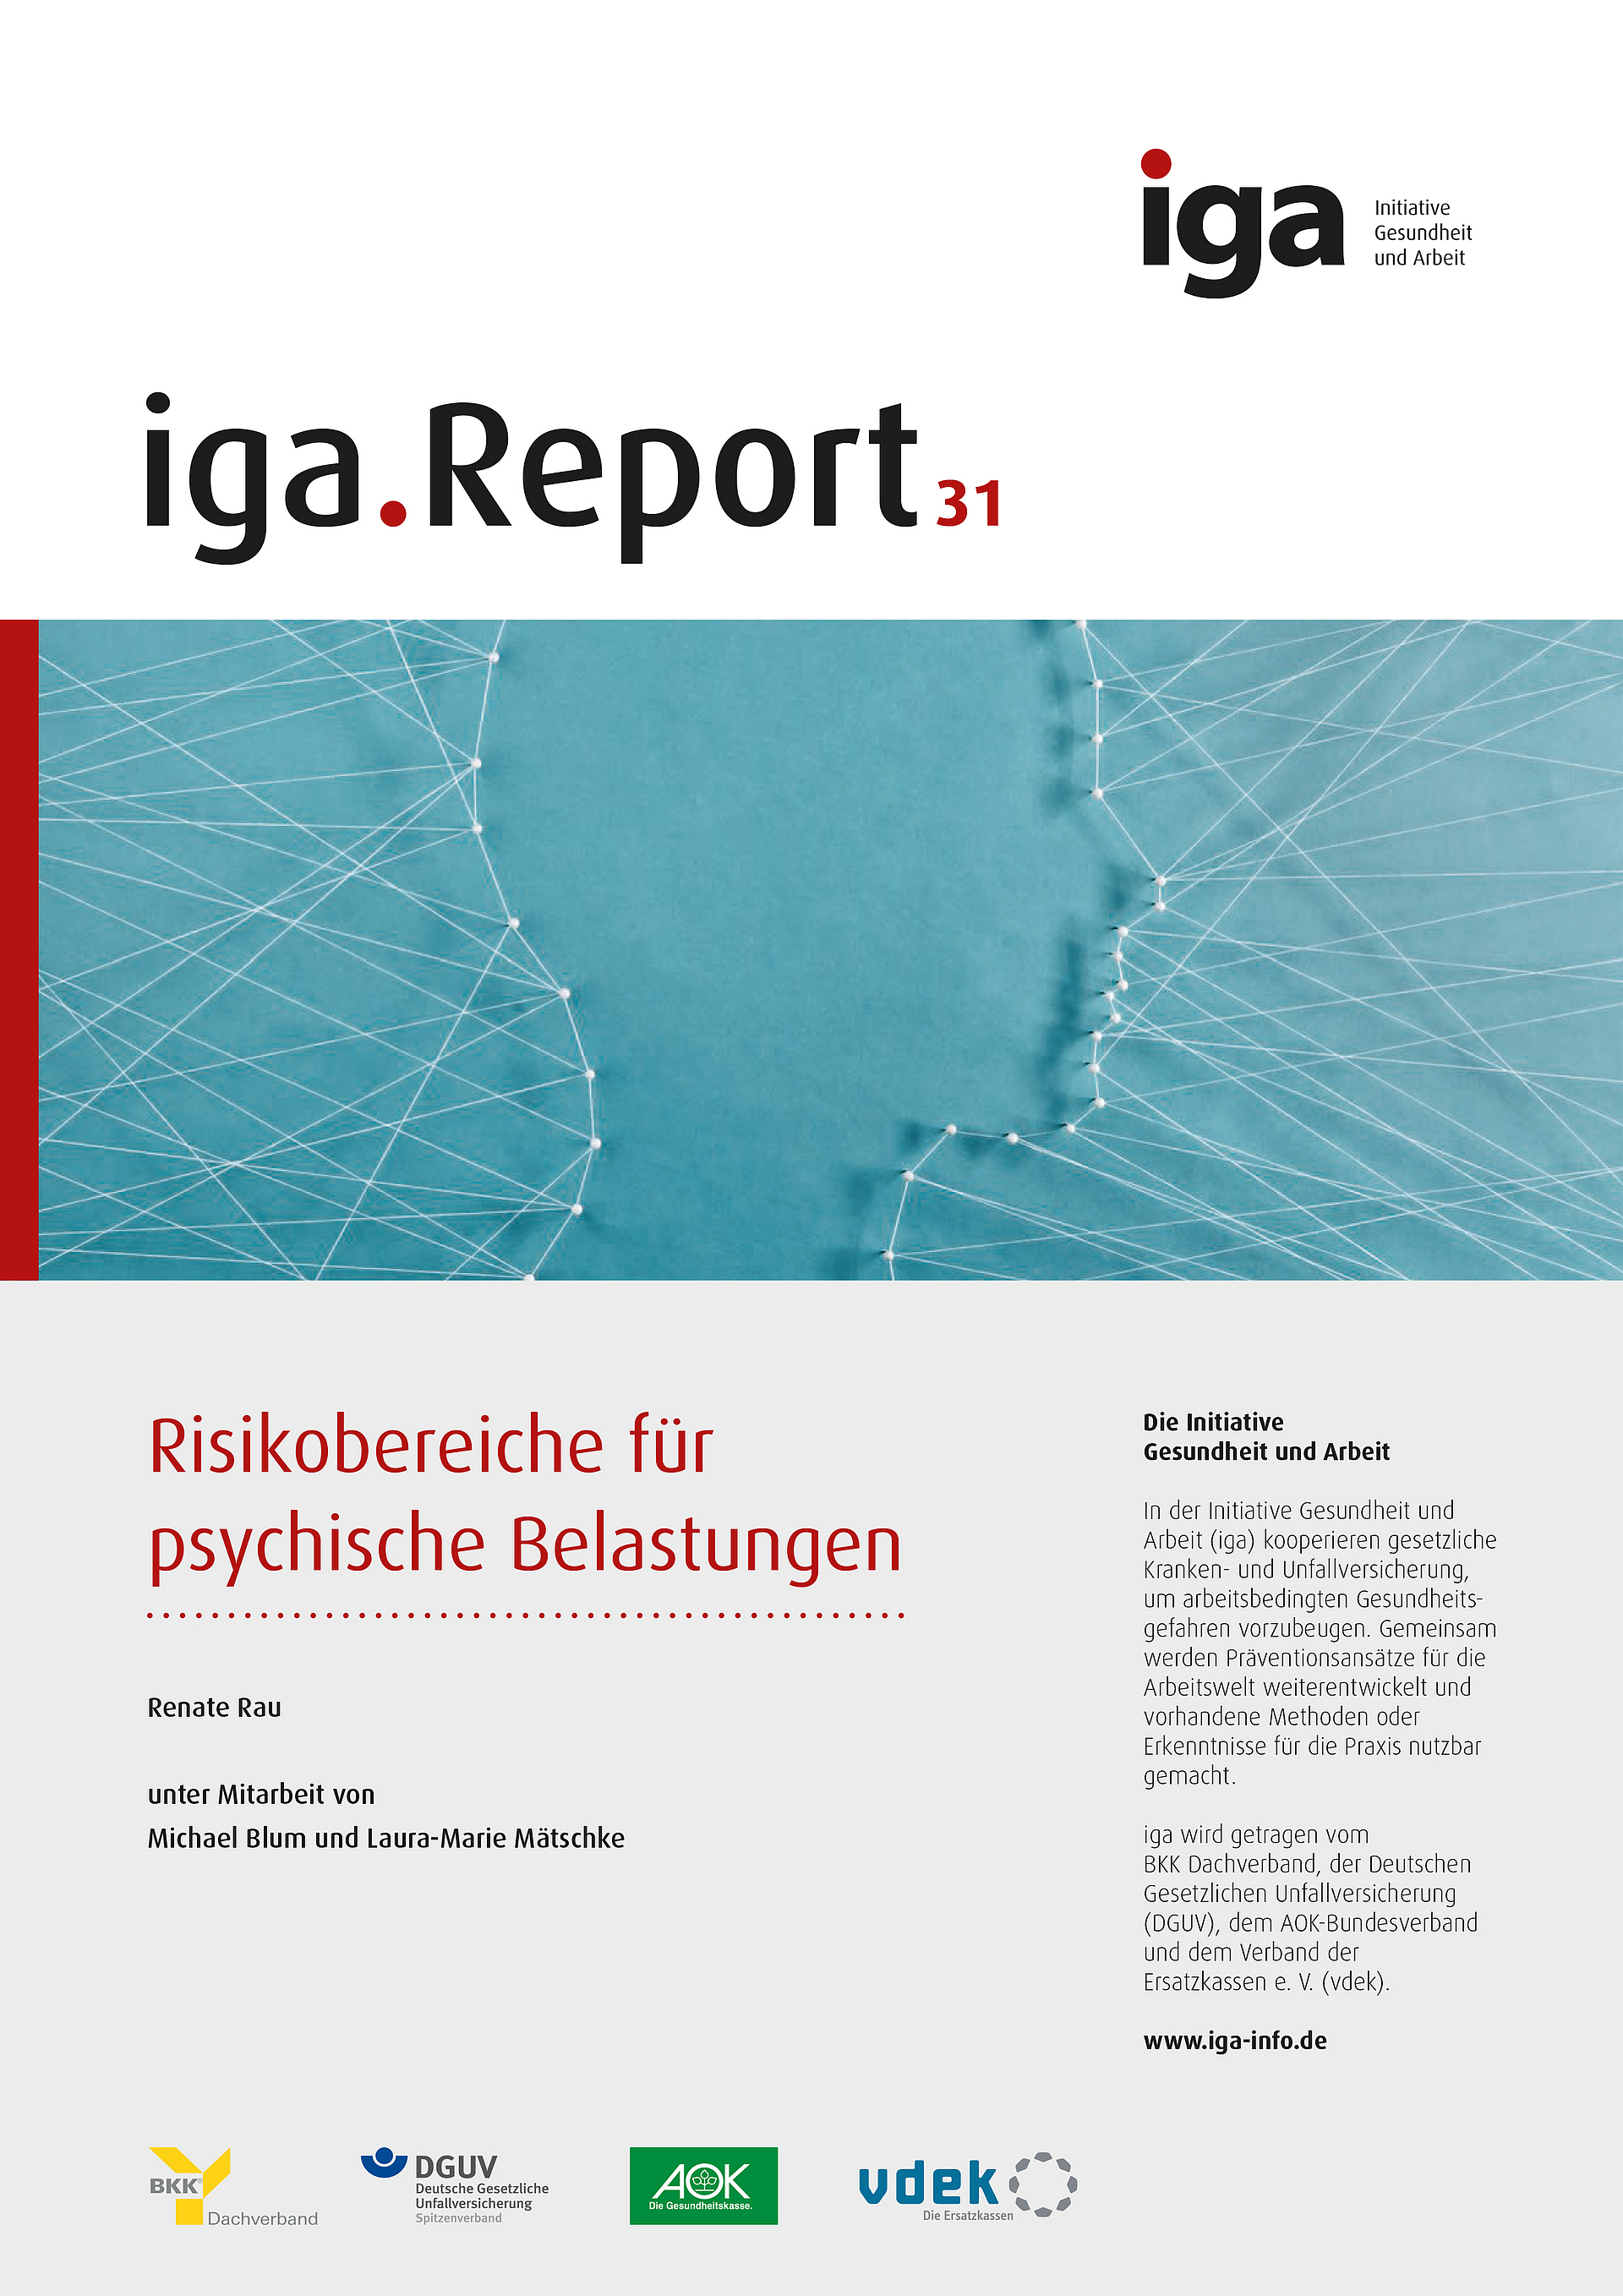 Titelbild der Broschüre: iga.Report 31 - Risikobereiche der psychischen Belastung.